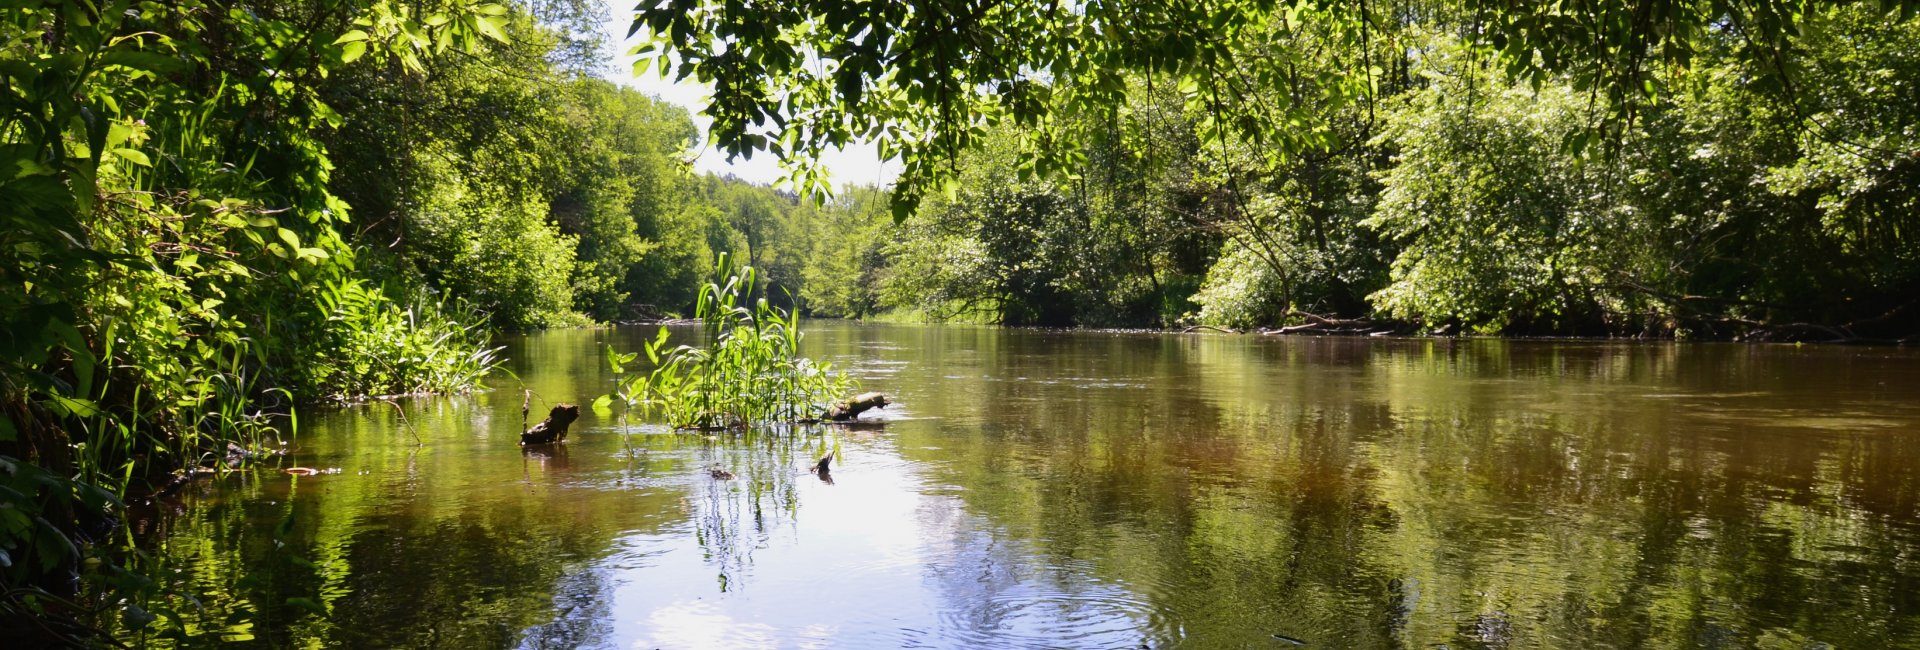 Rezerwat przyrody "Rzeka Drwęca"